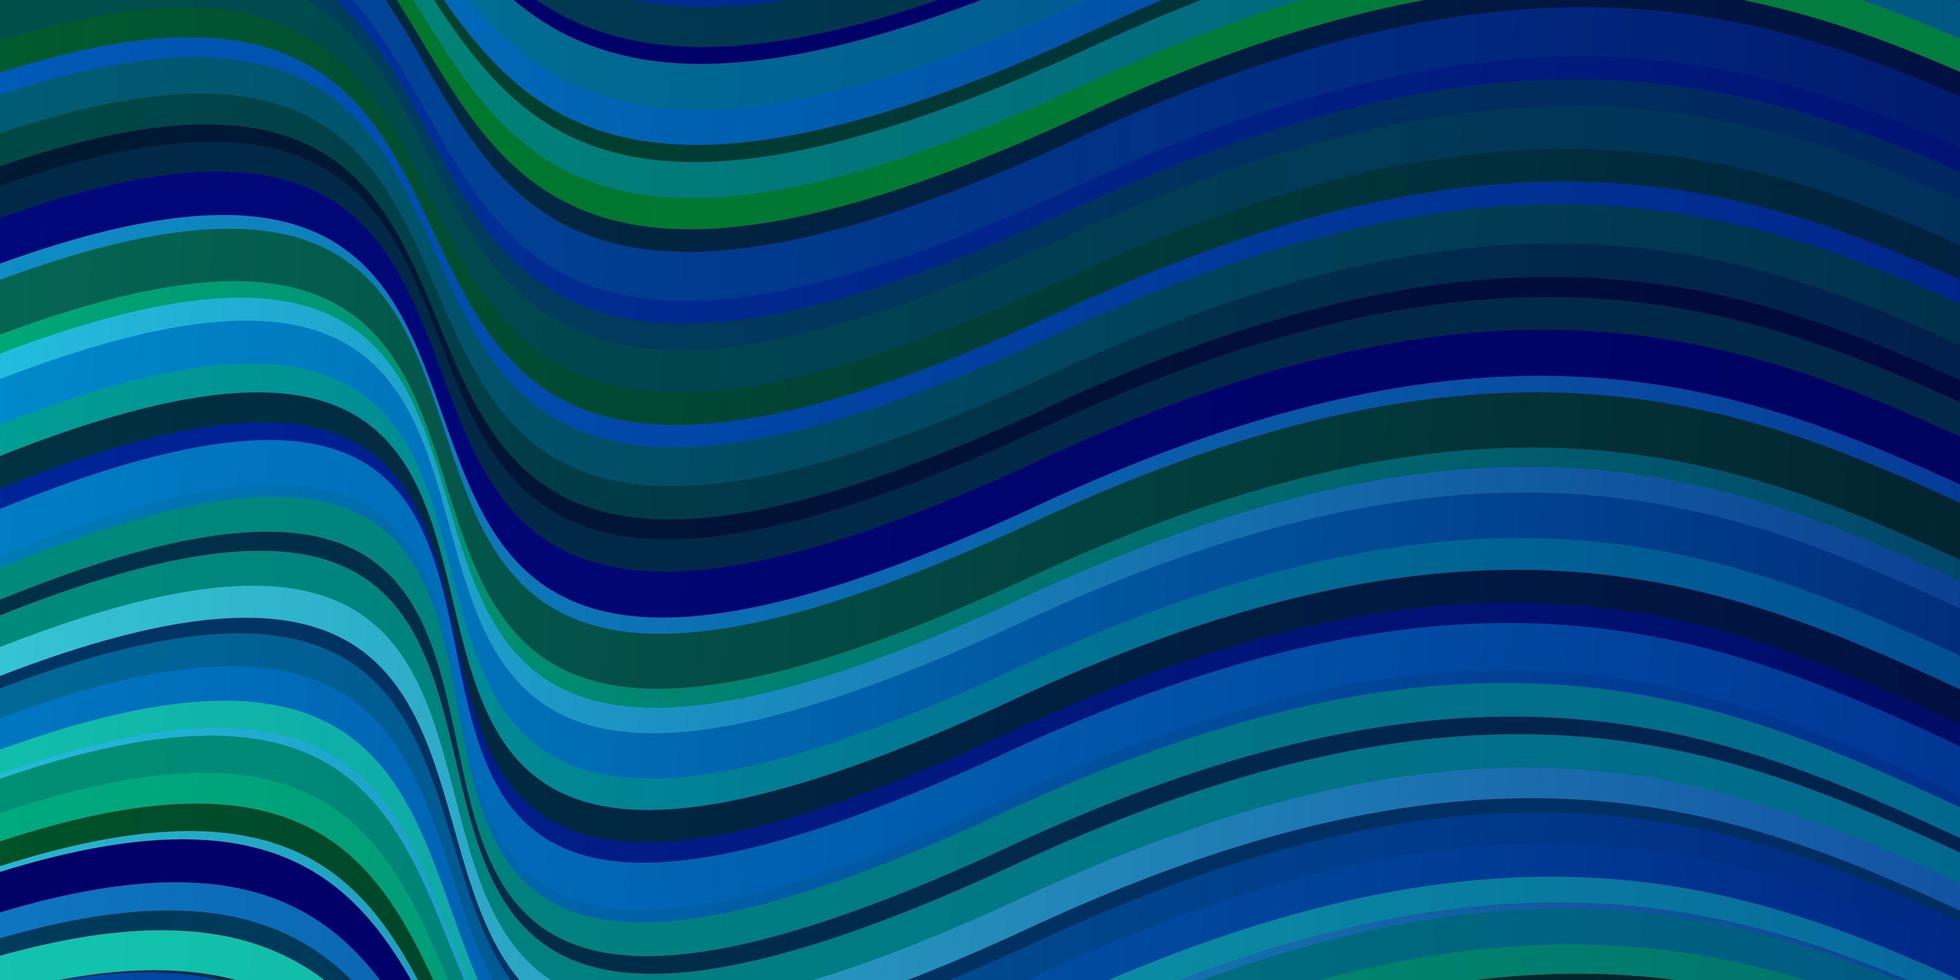 padrão de vetor azul e verde claro com linhas.